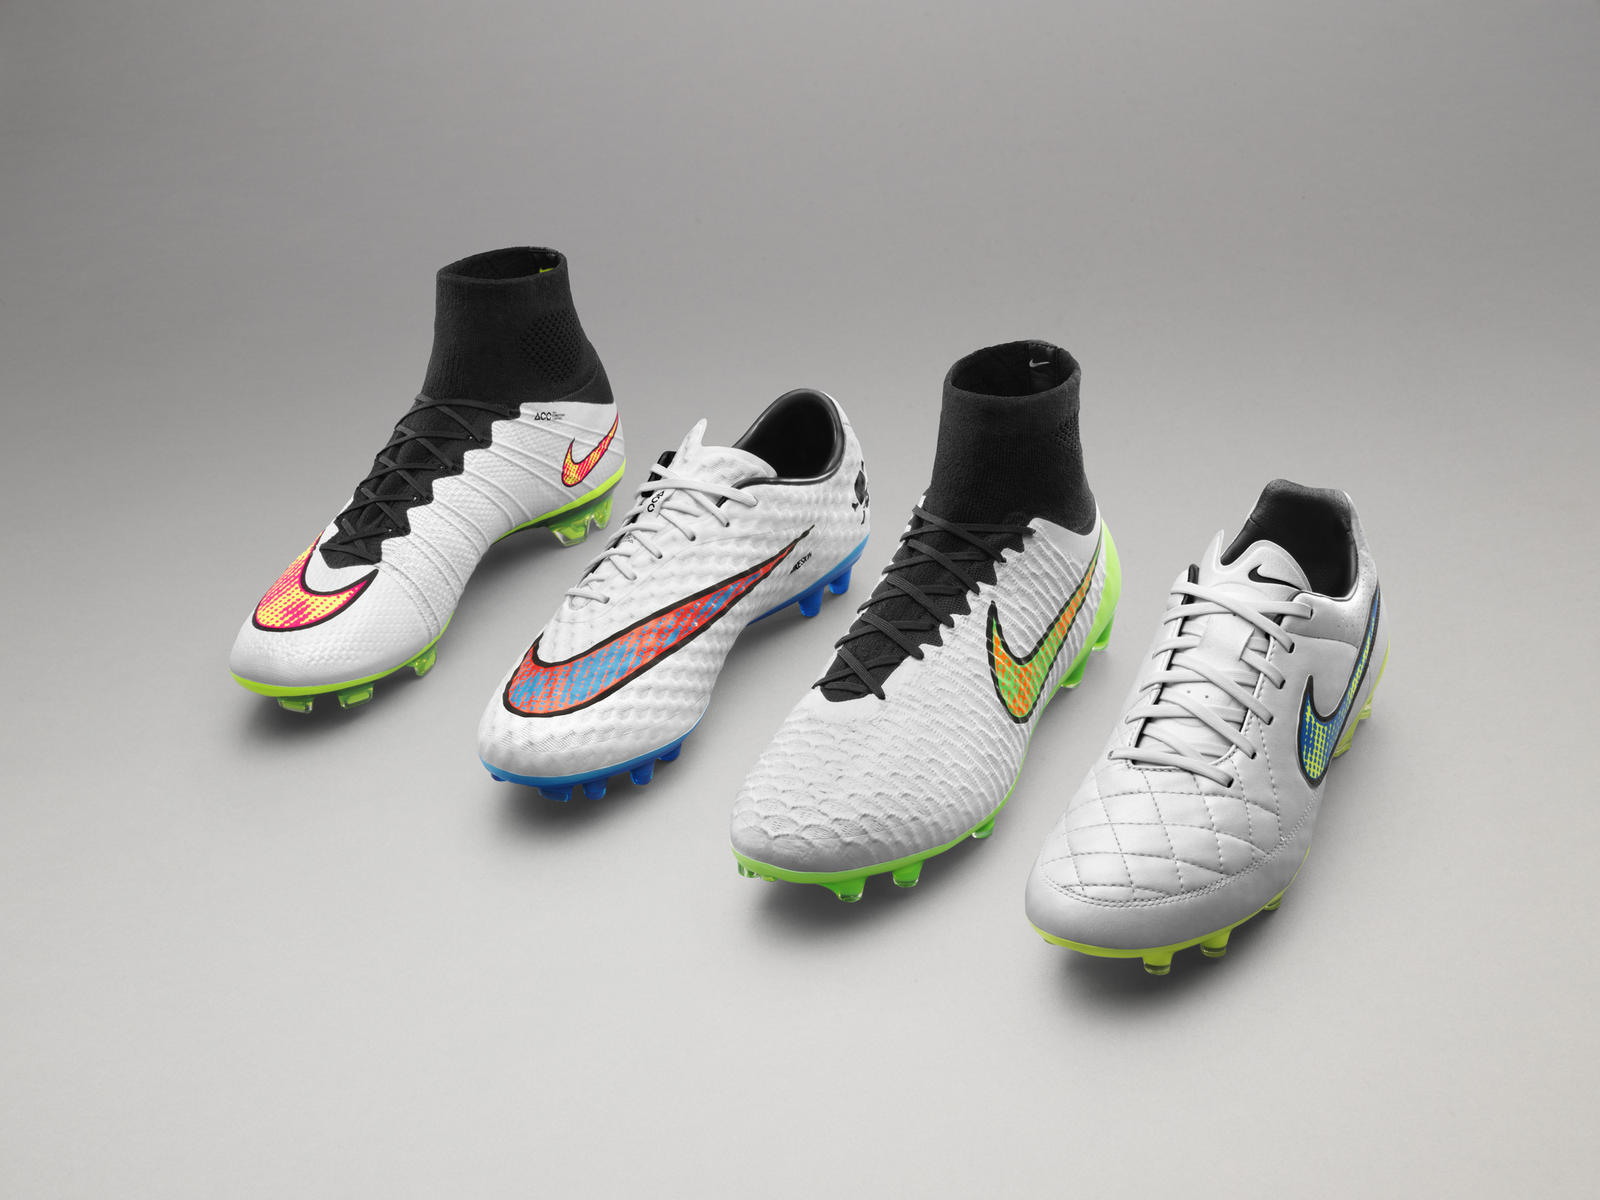 Nike football « Shine Through » white boots magista